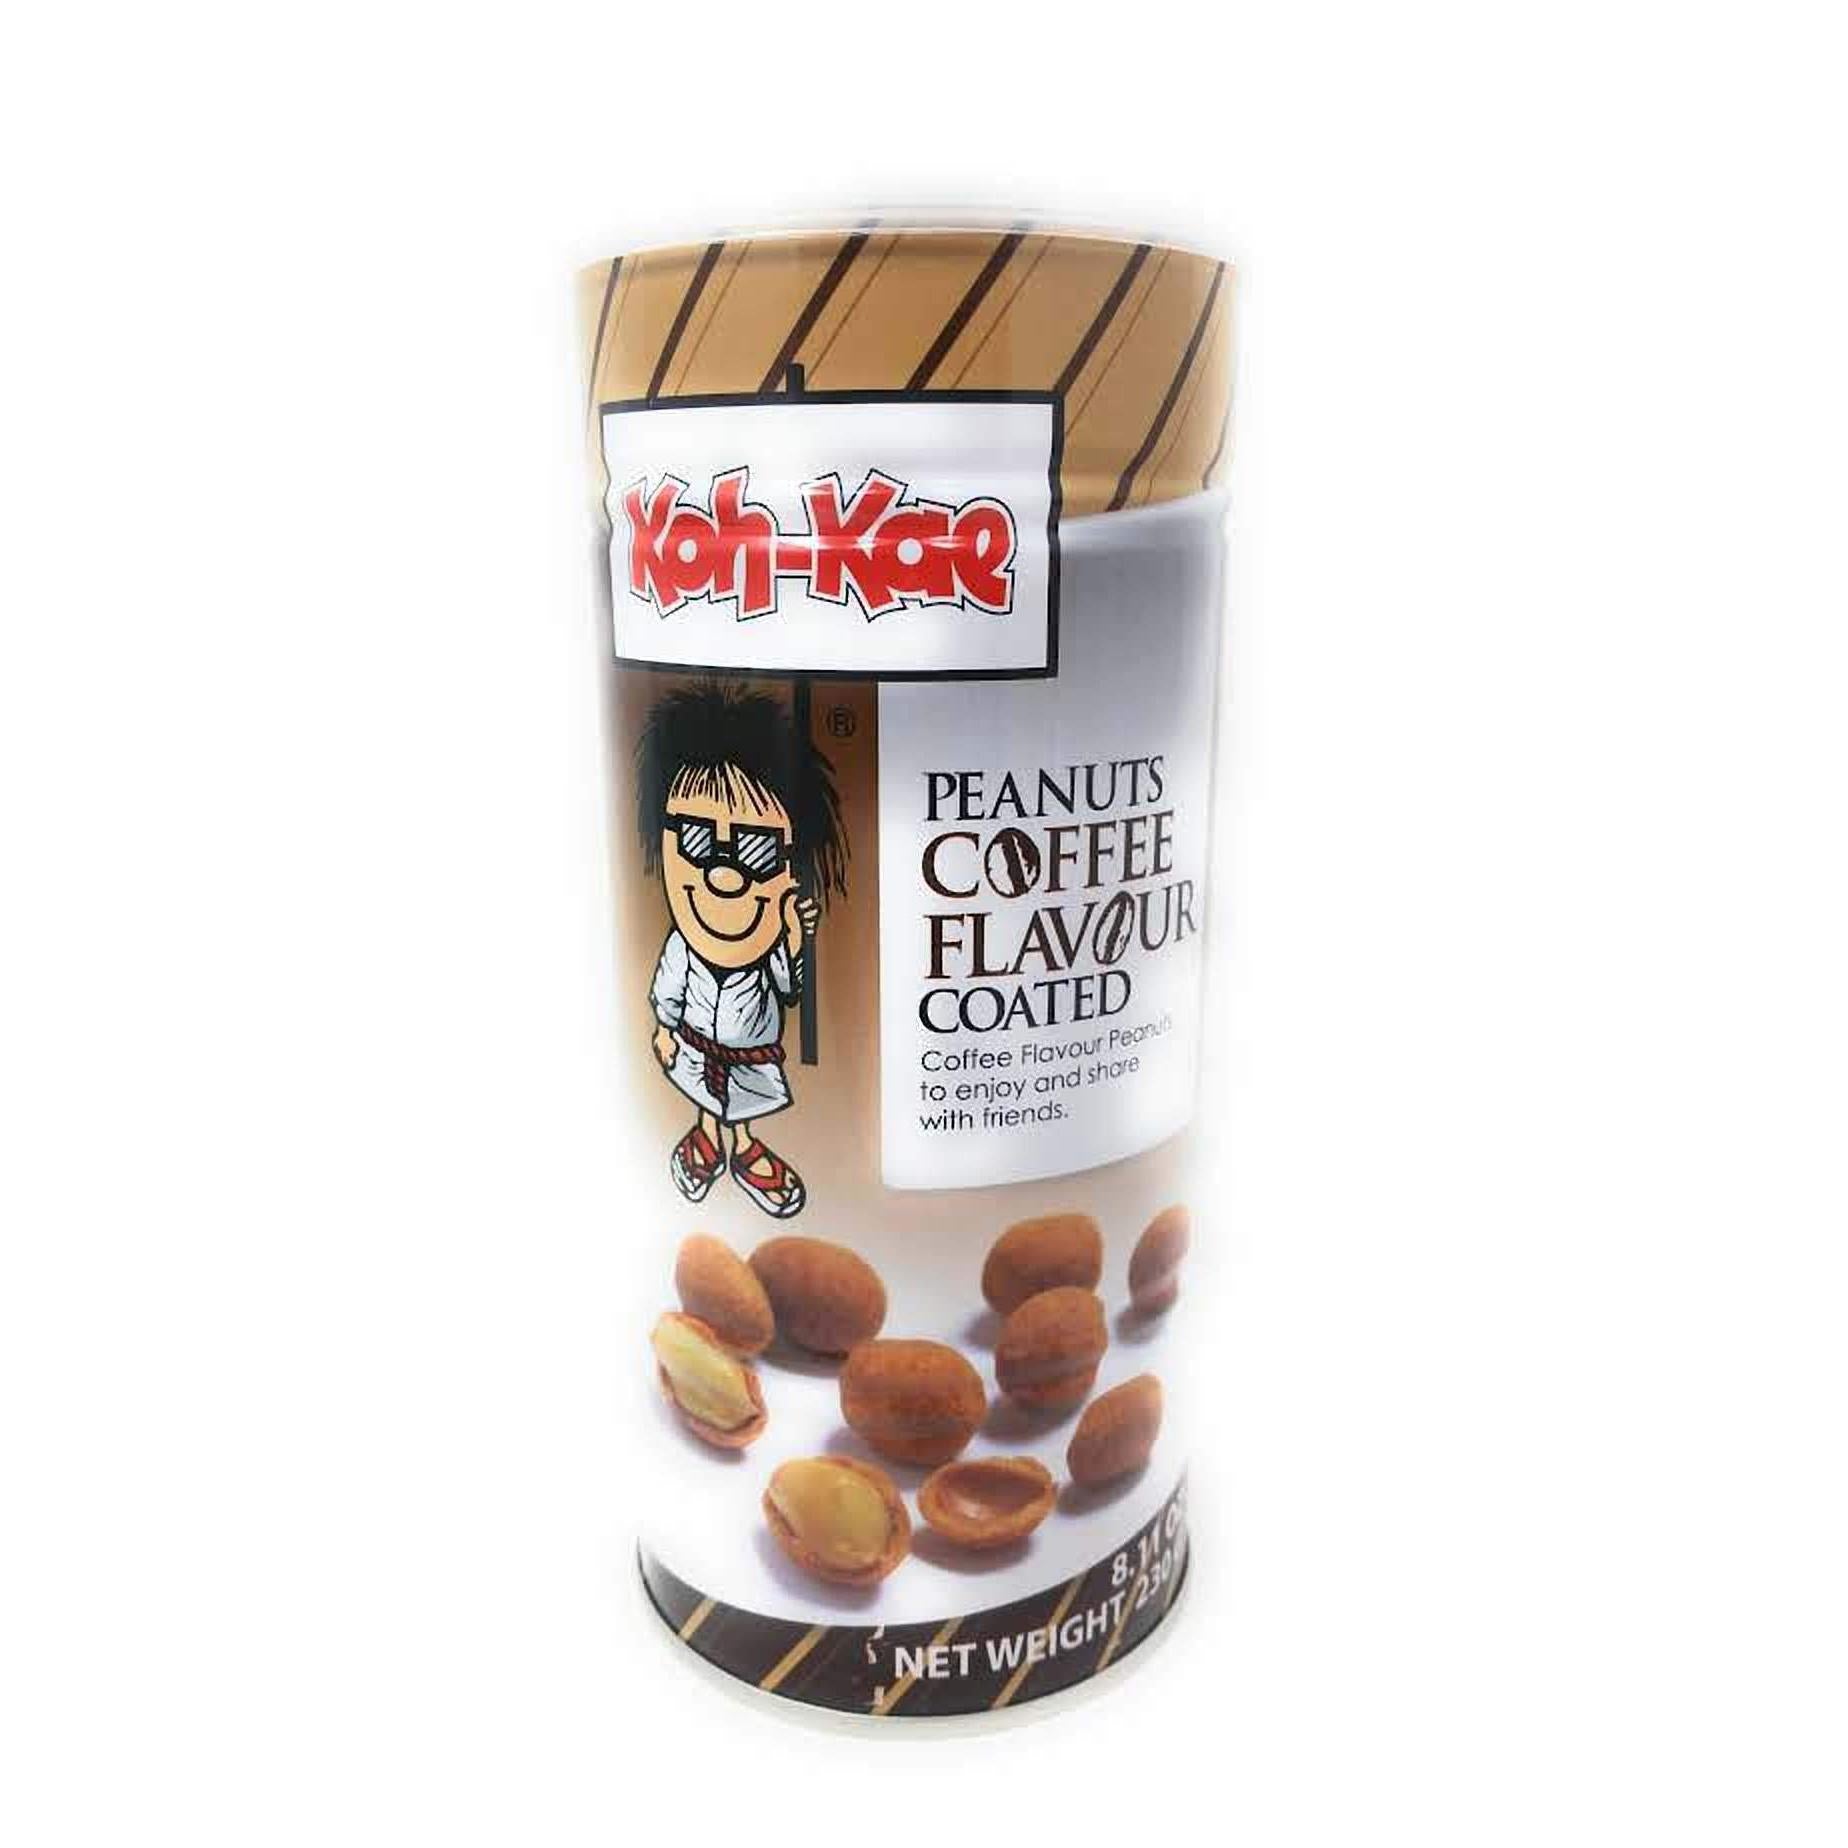 Koh-Kae Peanuts Coffee Flavor Coated, 230g